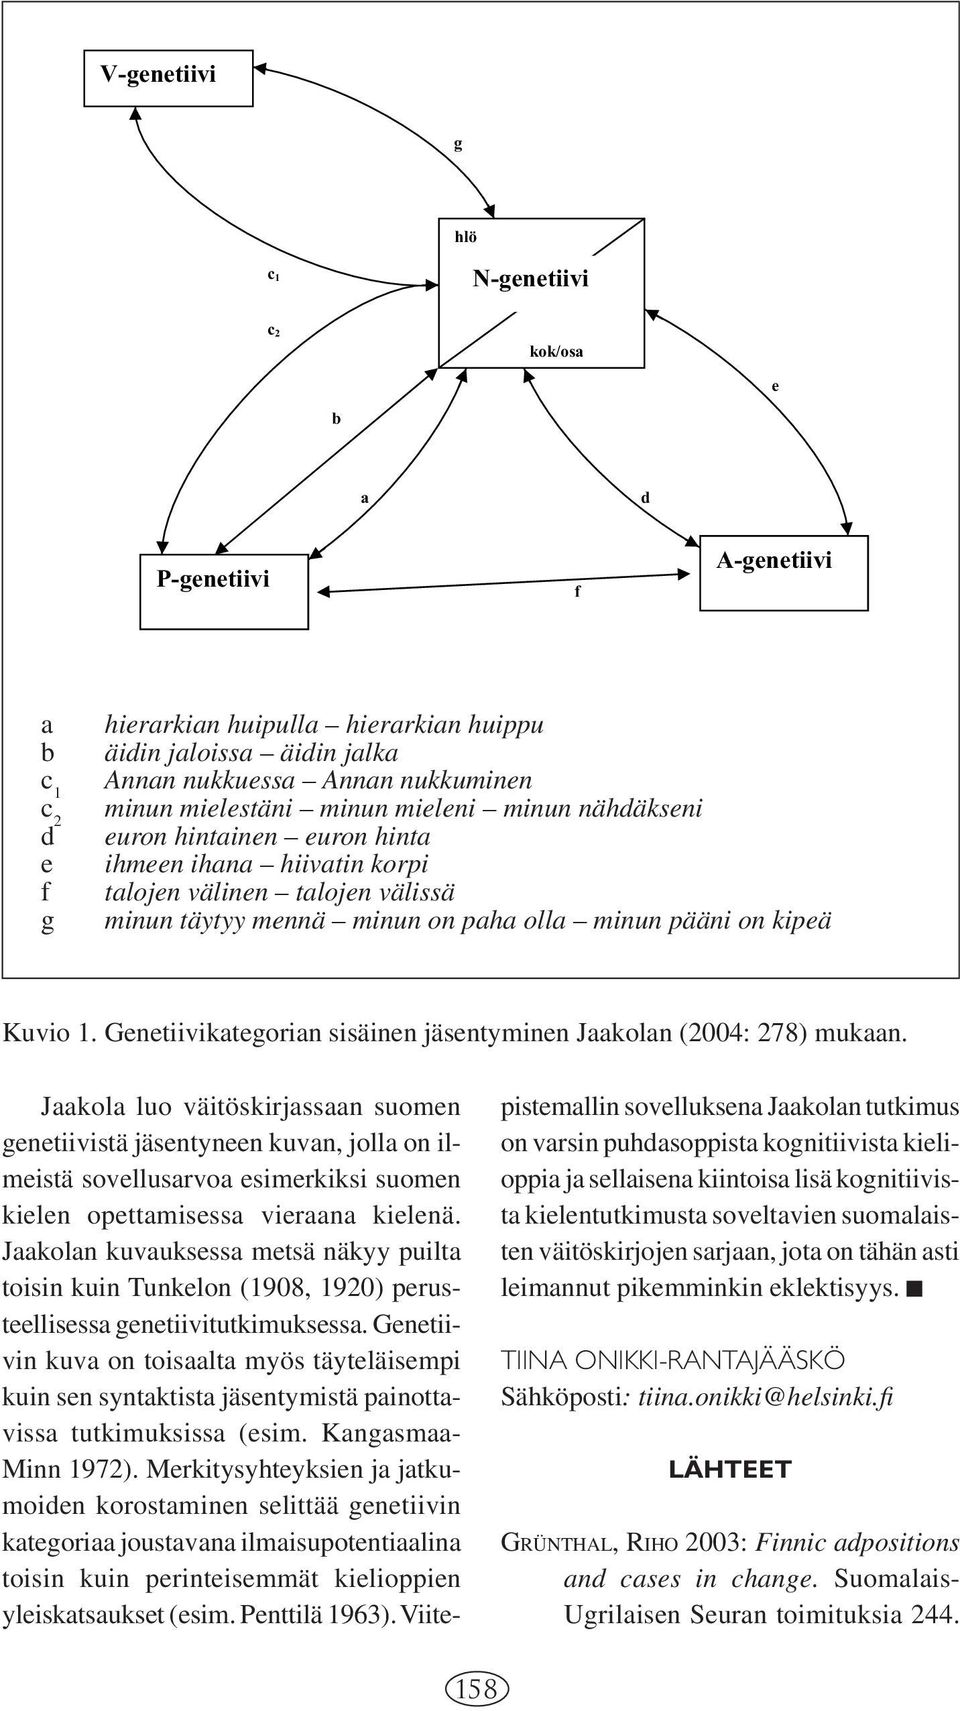 Kuvio 1. Genetiivikategorian sisäinen jäsentyminen Jaakolan (2004: 278) mukaan.